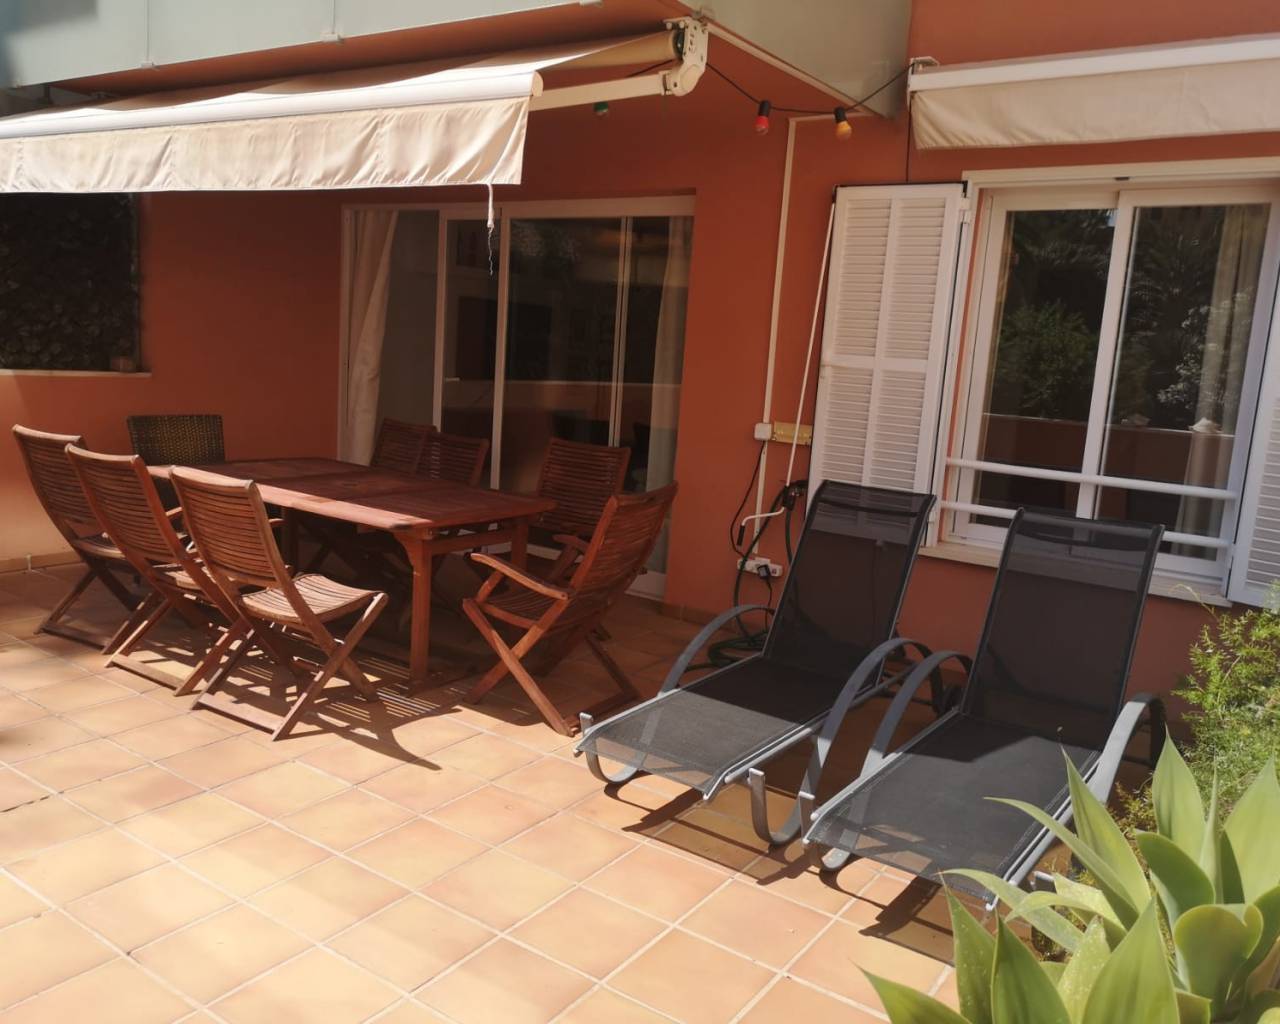 3 bedroom apartment in rent in Palma De Mallorca-Mallorca estate agents